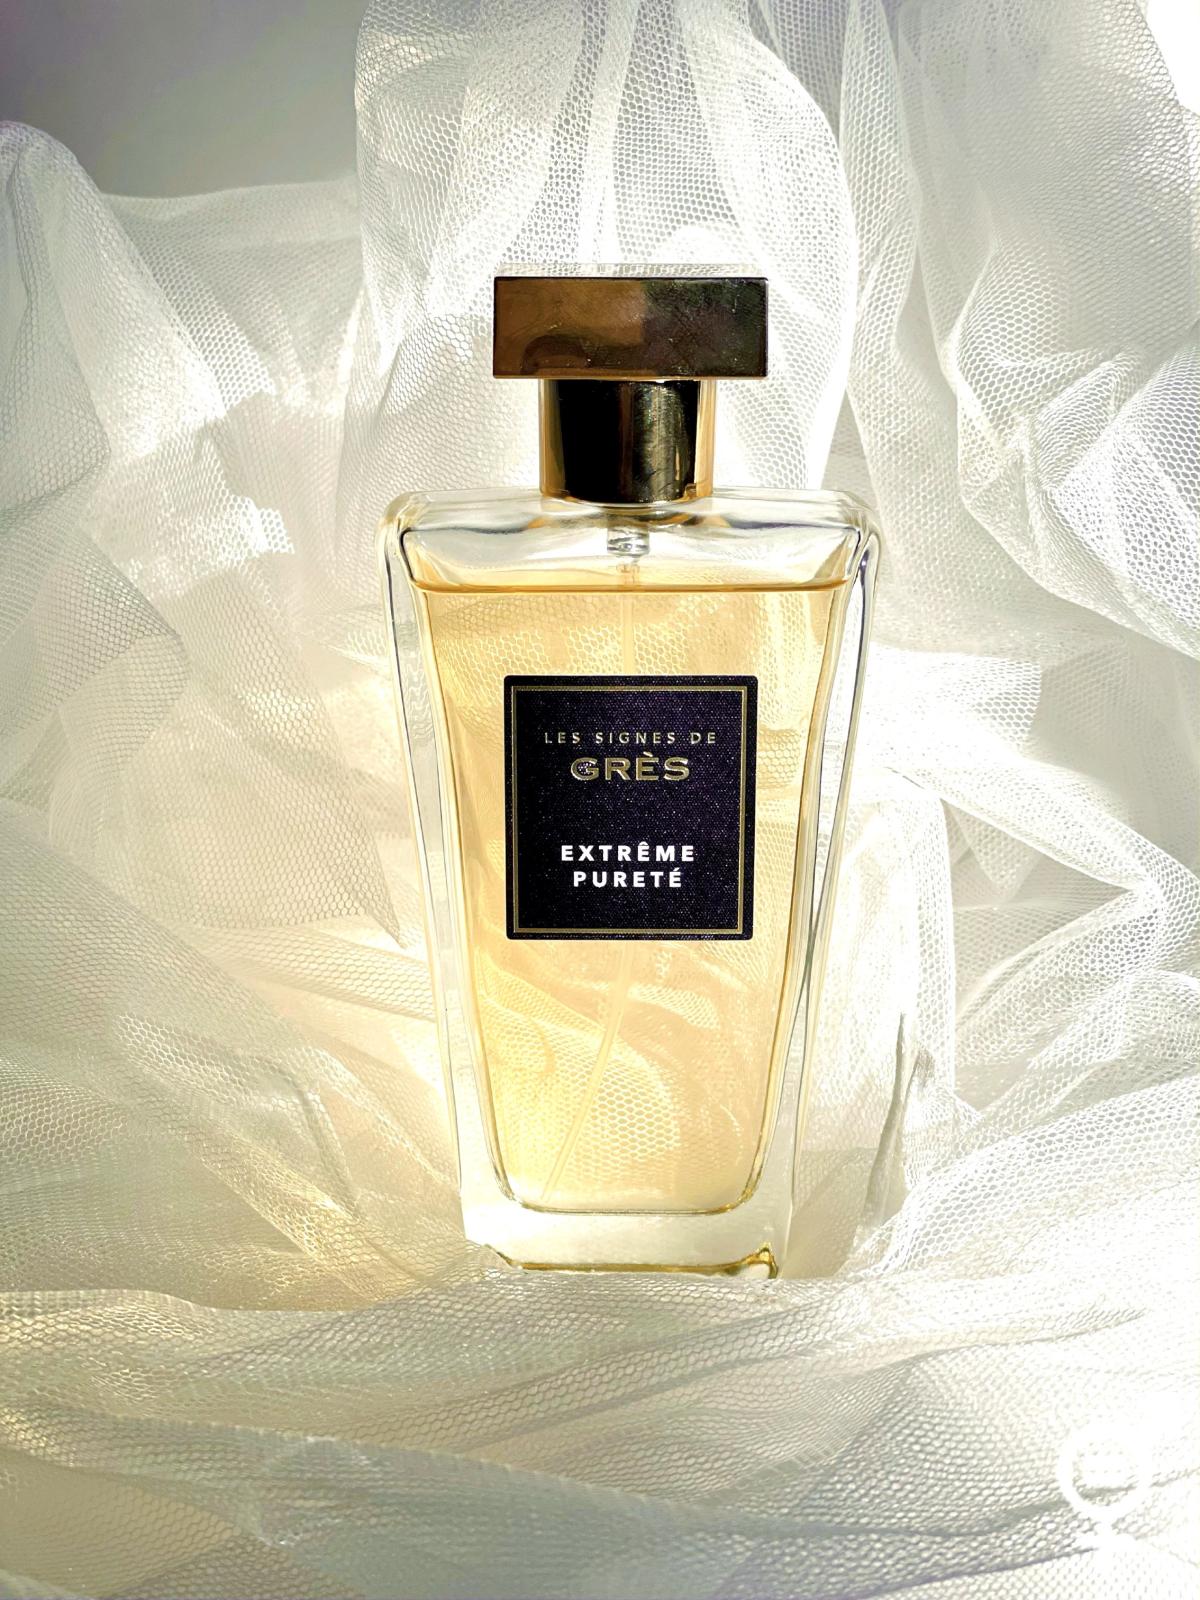 Extrême Pureté Grès perfume - a fragrance for women 2017